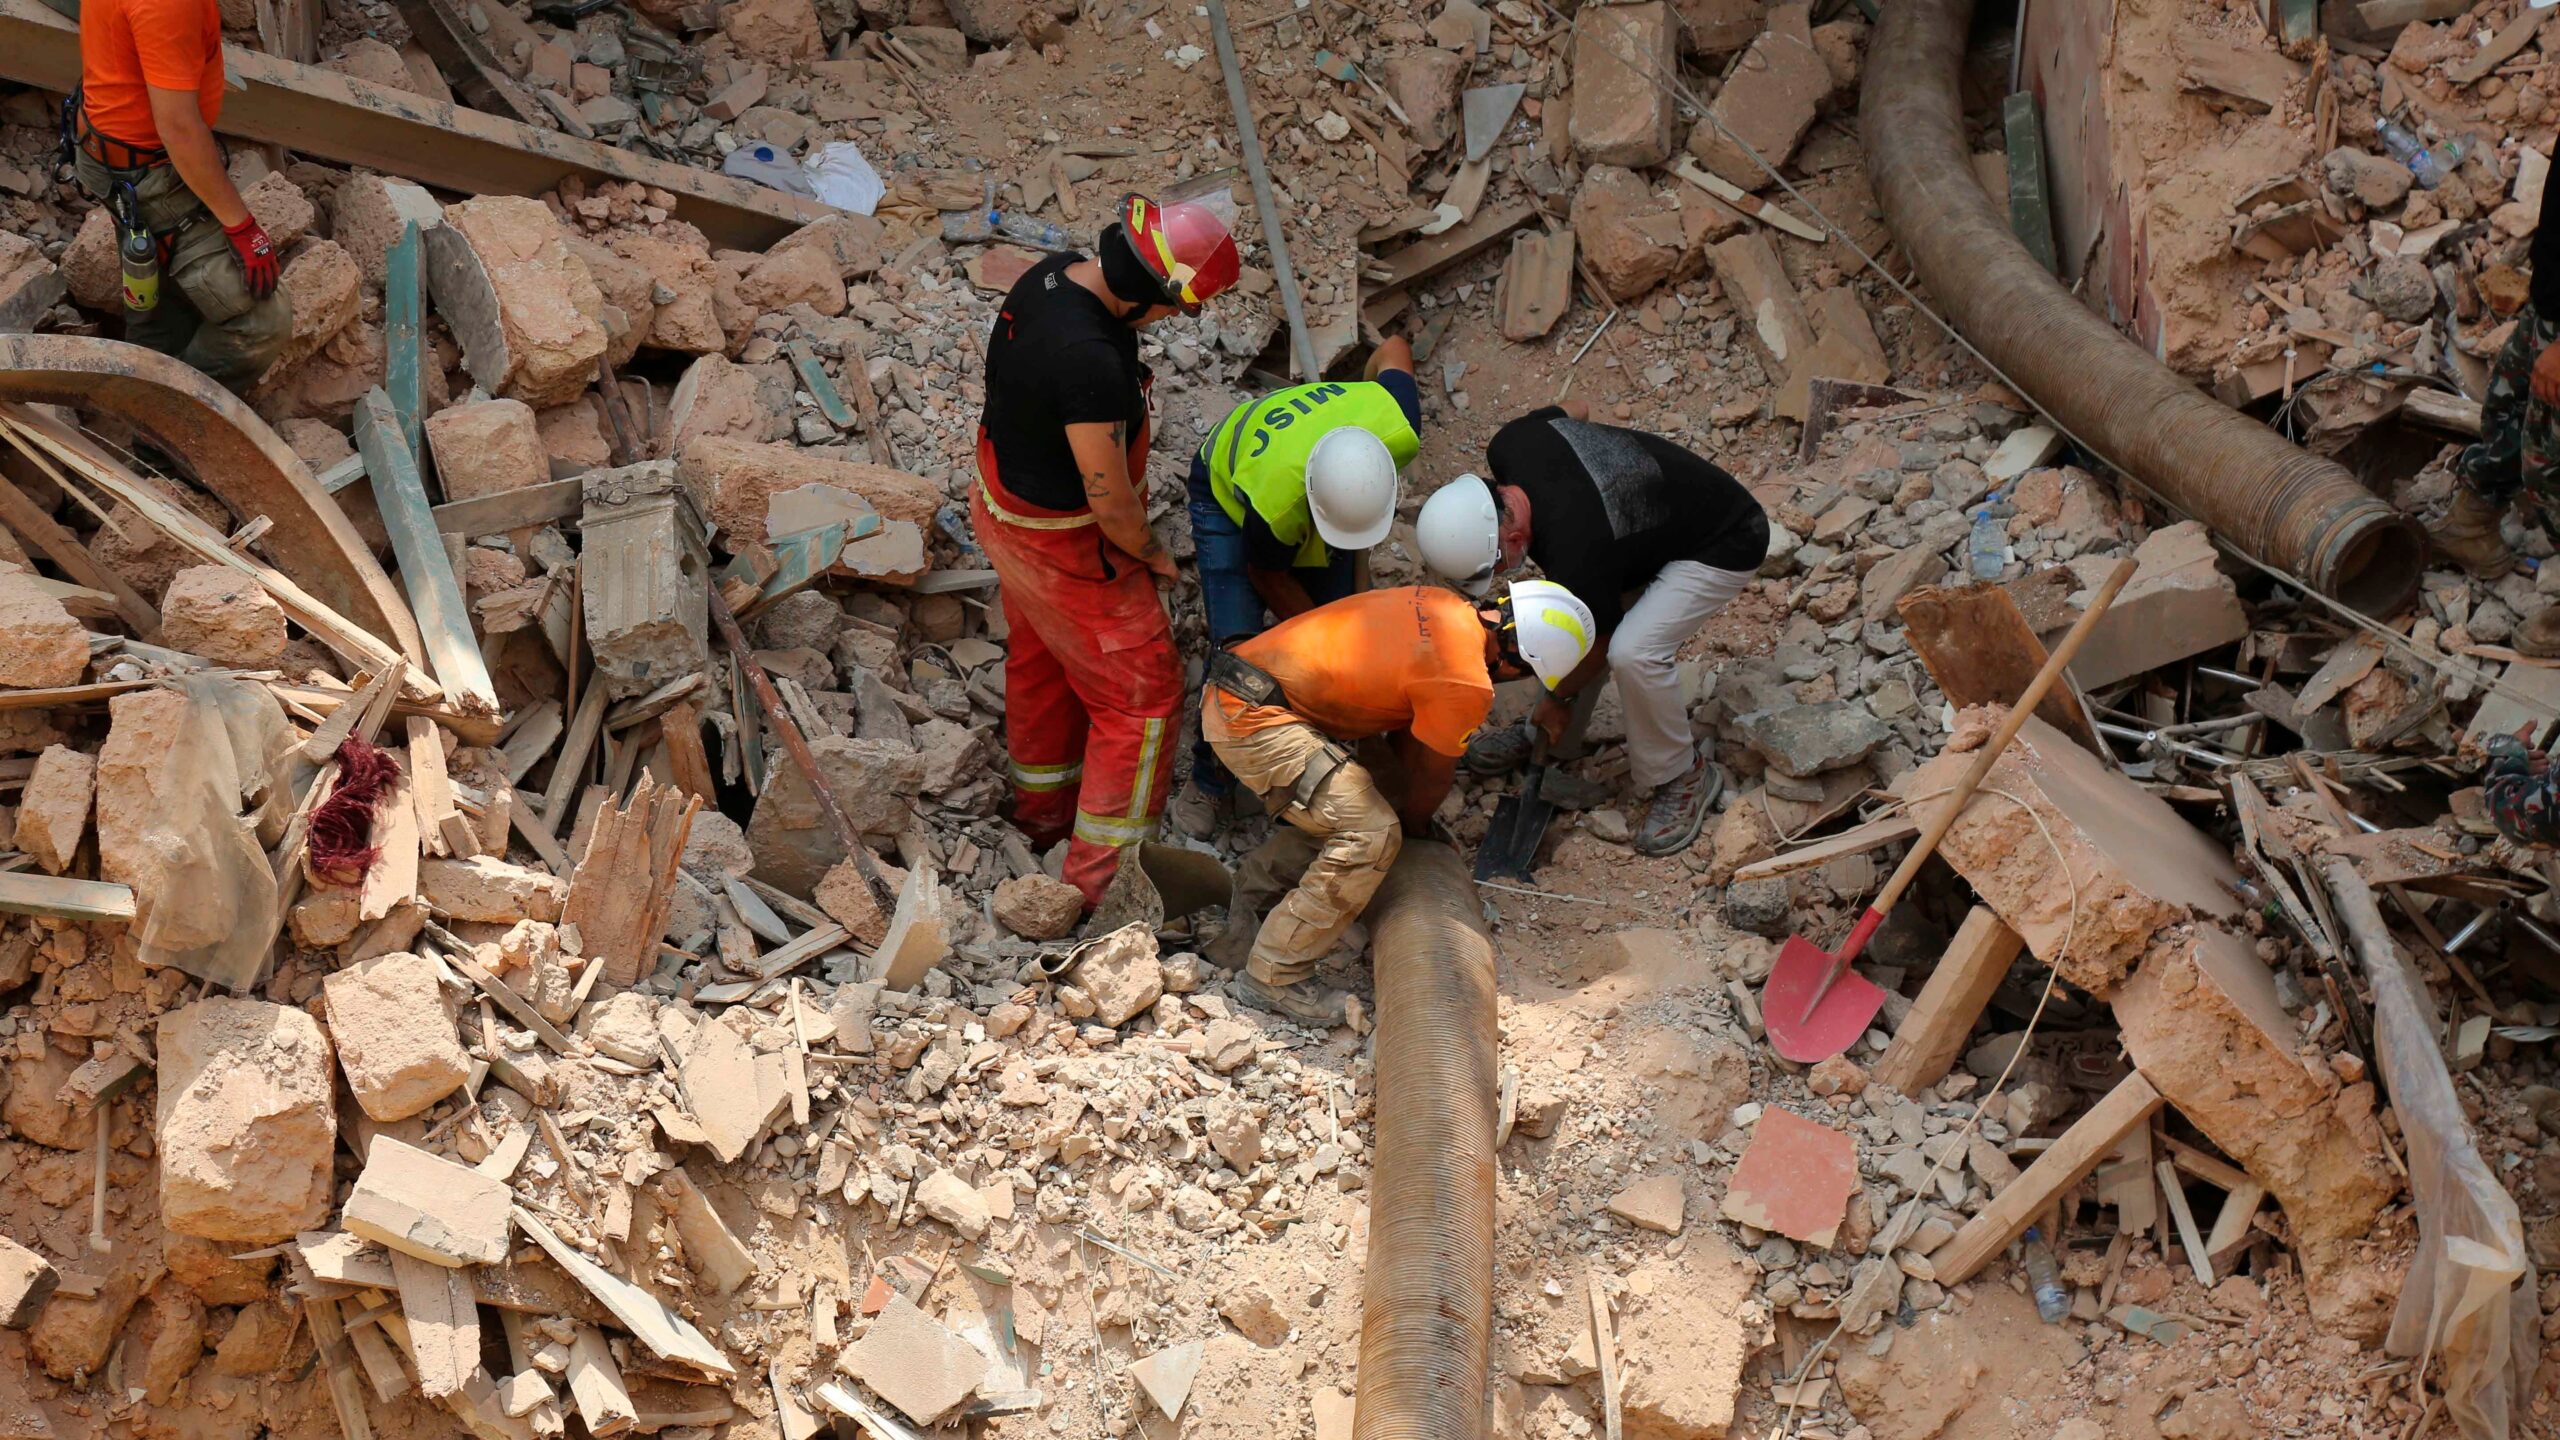 Tras varios días de búsqueda, descartan signos de vida bajo escombros en Beirut